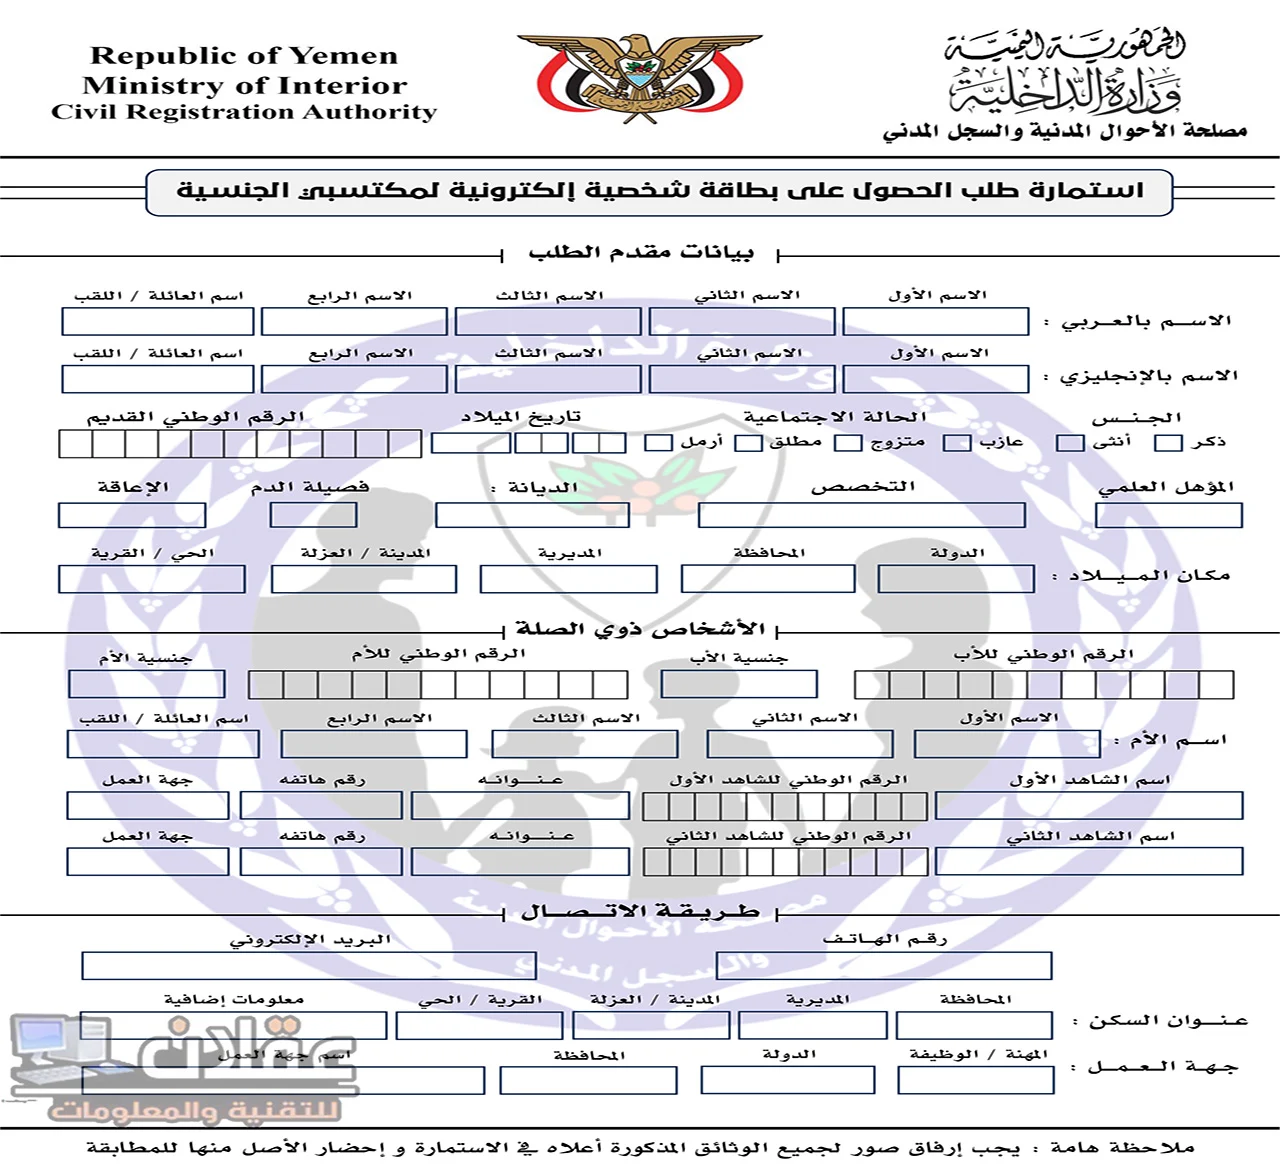 الصفحة الأول من استمارة البطاقة الذكية اليمن